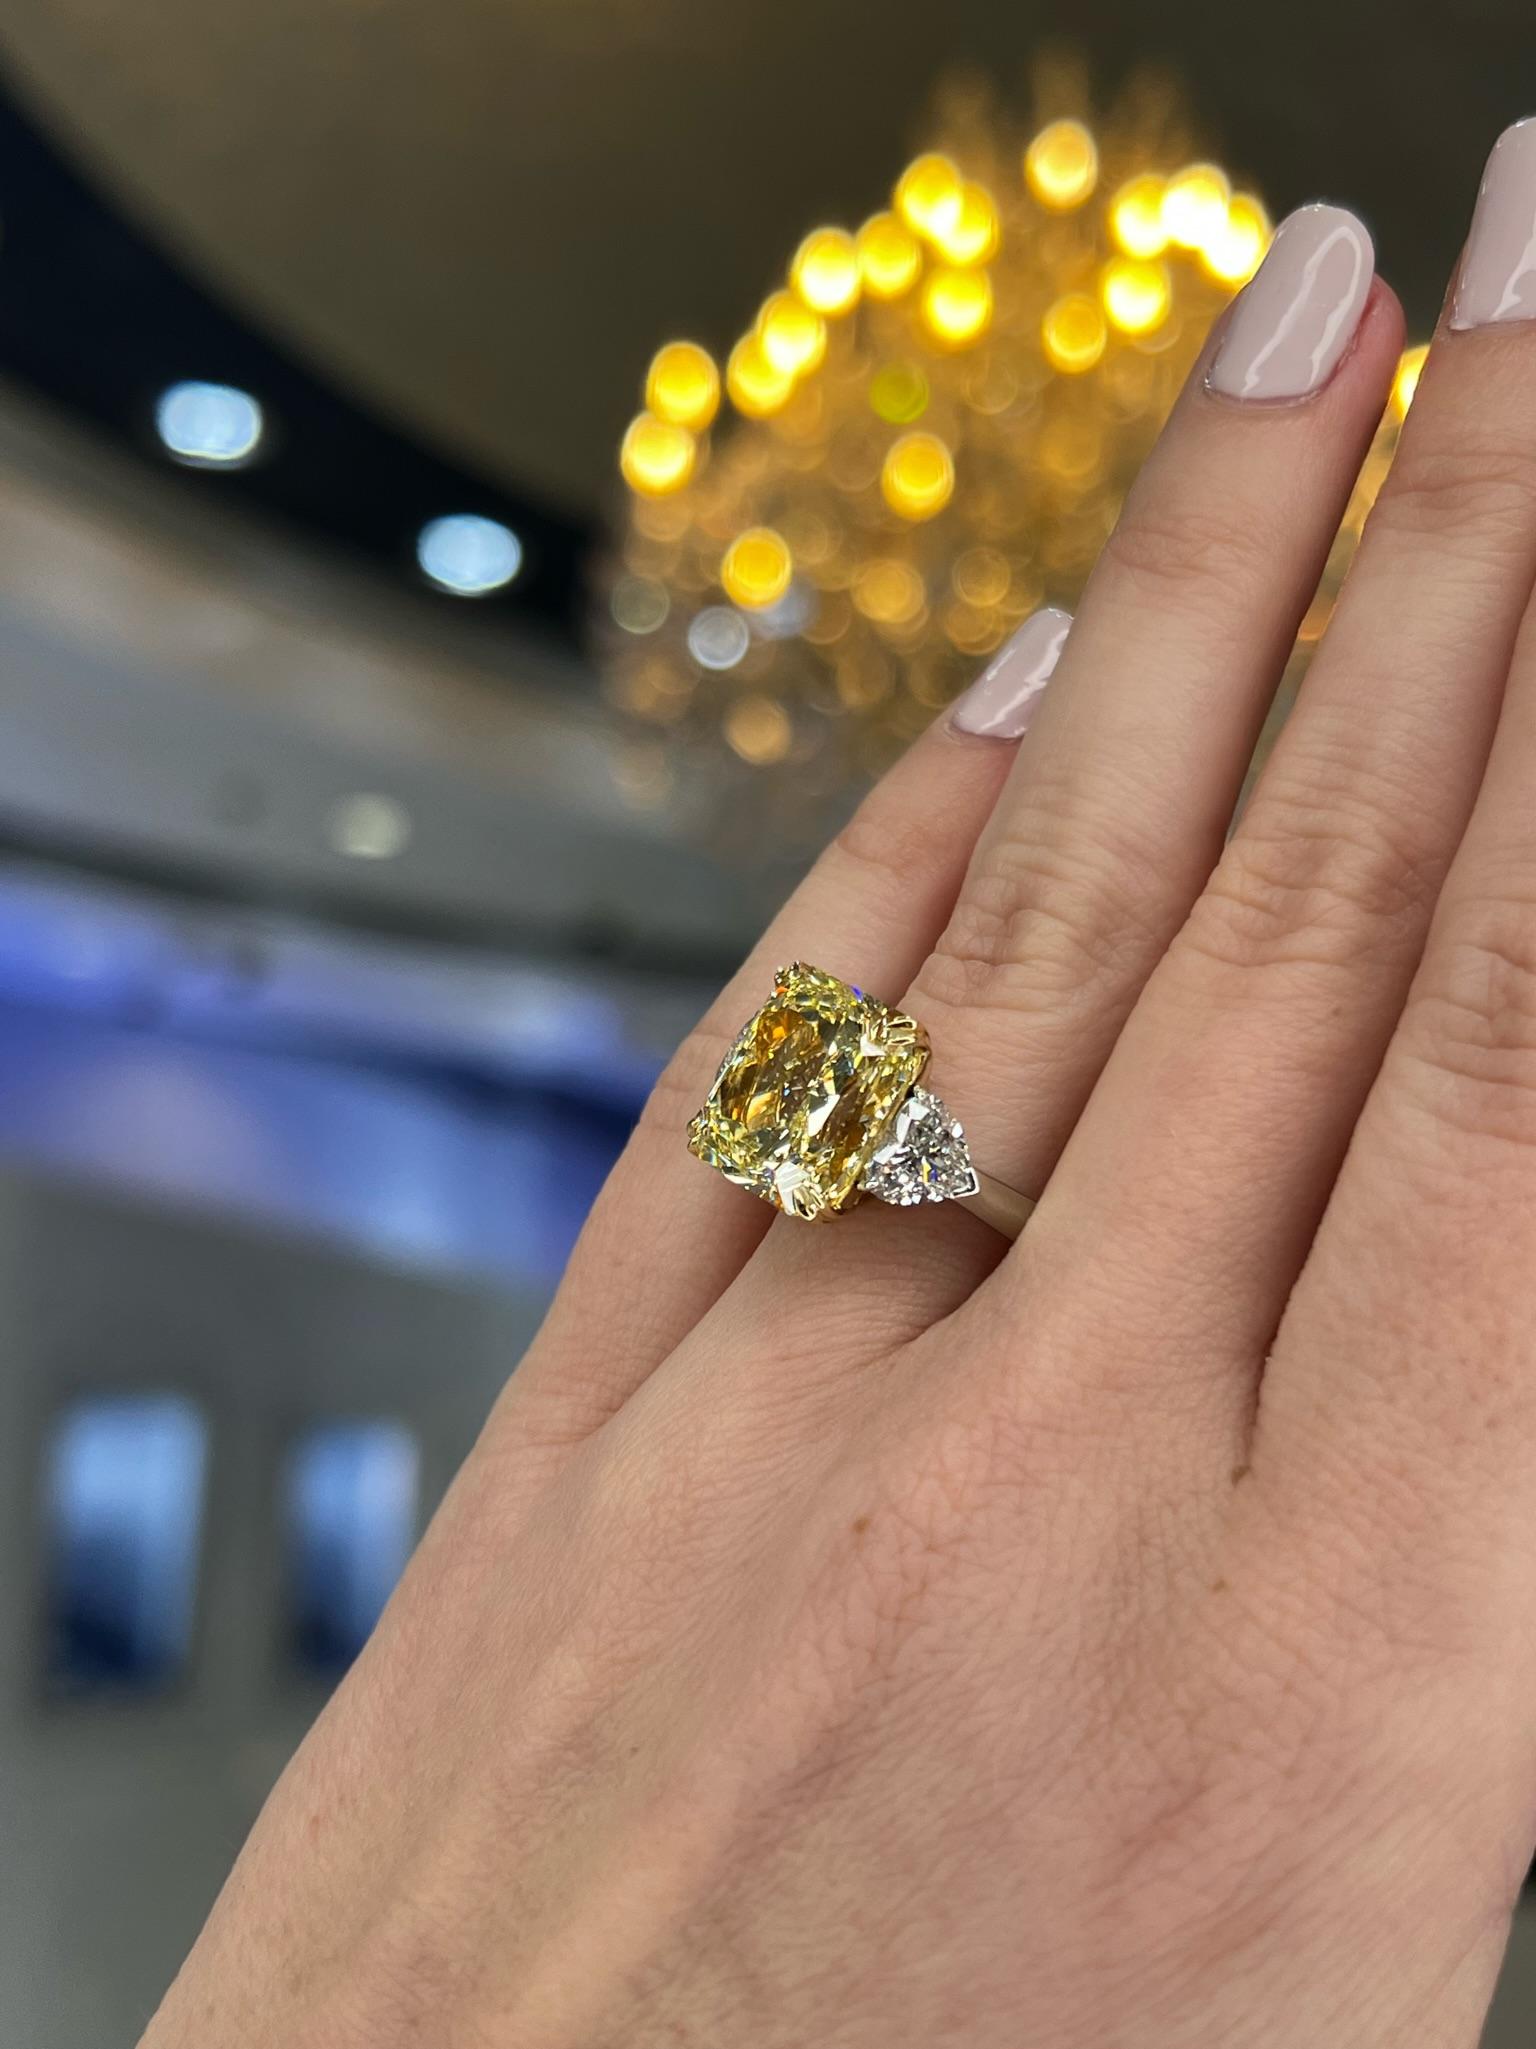 David Rosenberg 10.23 Radiant Fancy Yellow VVS1 GIA Diamond Engagement Ring For Sale 6